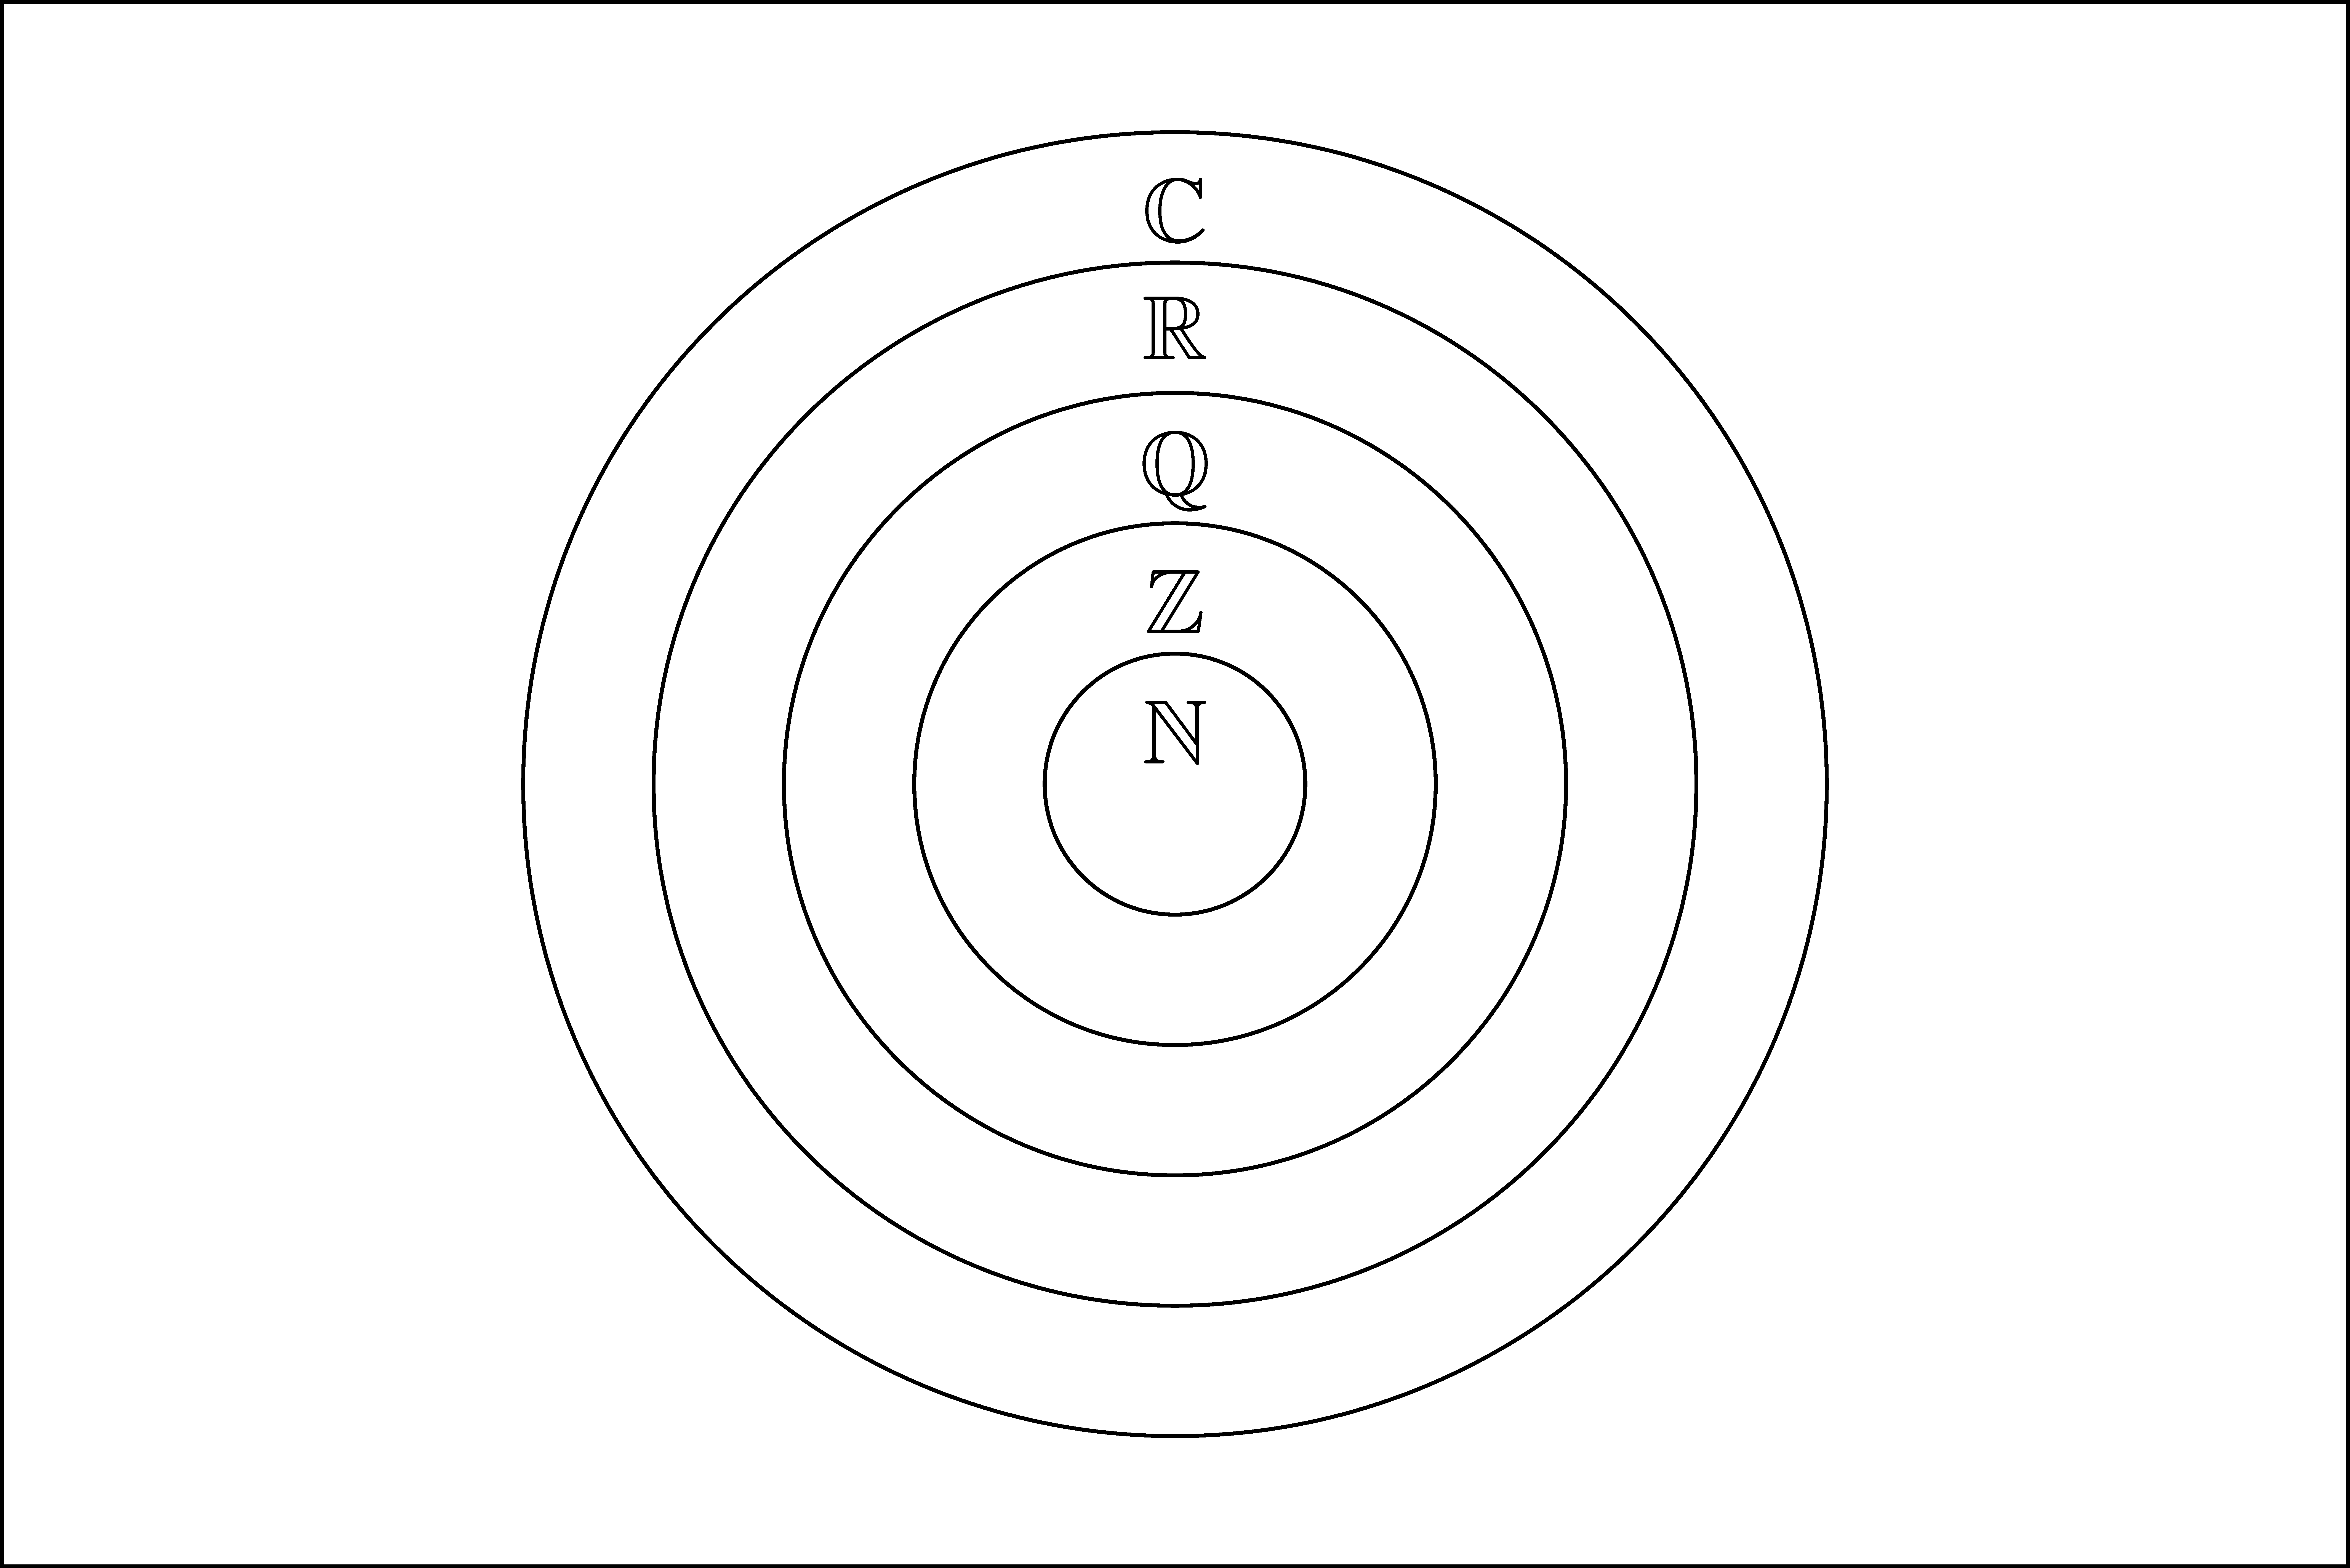 Sample Venn diagrams